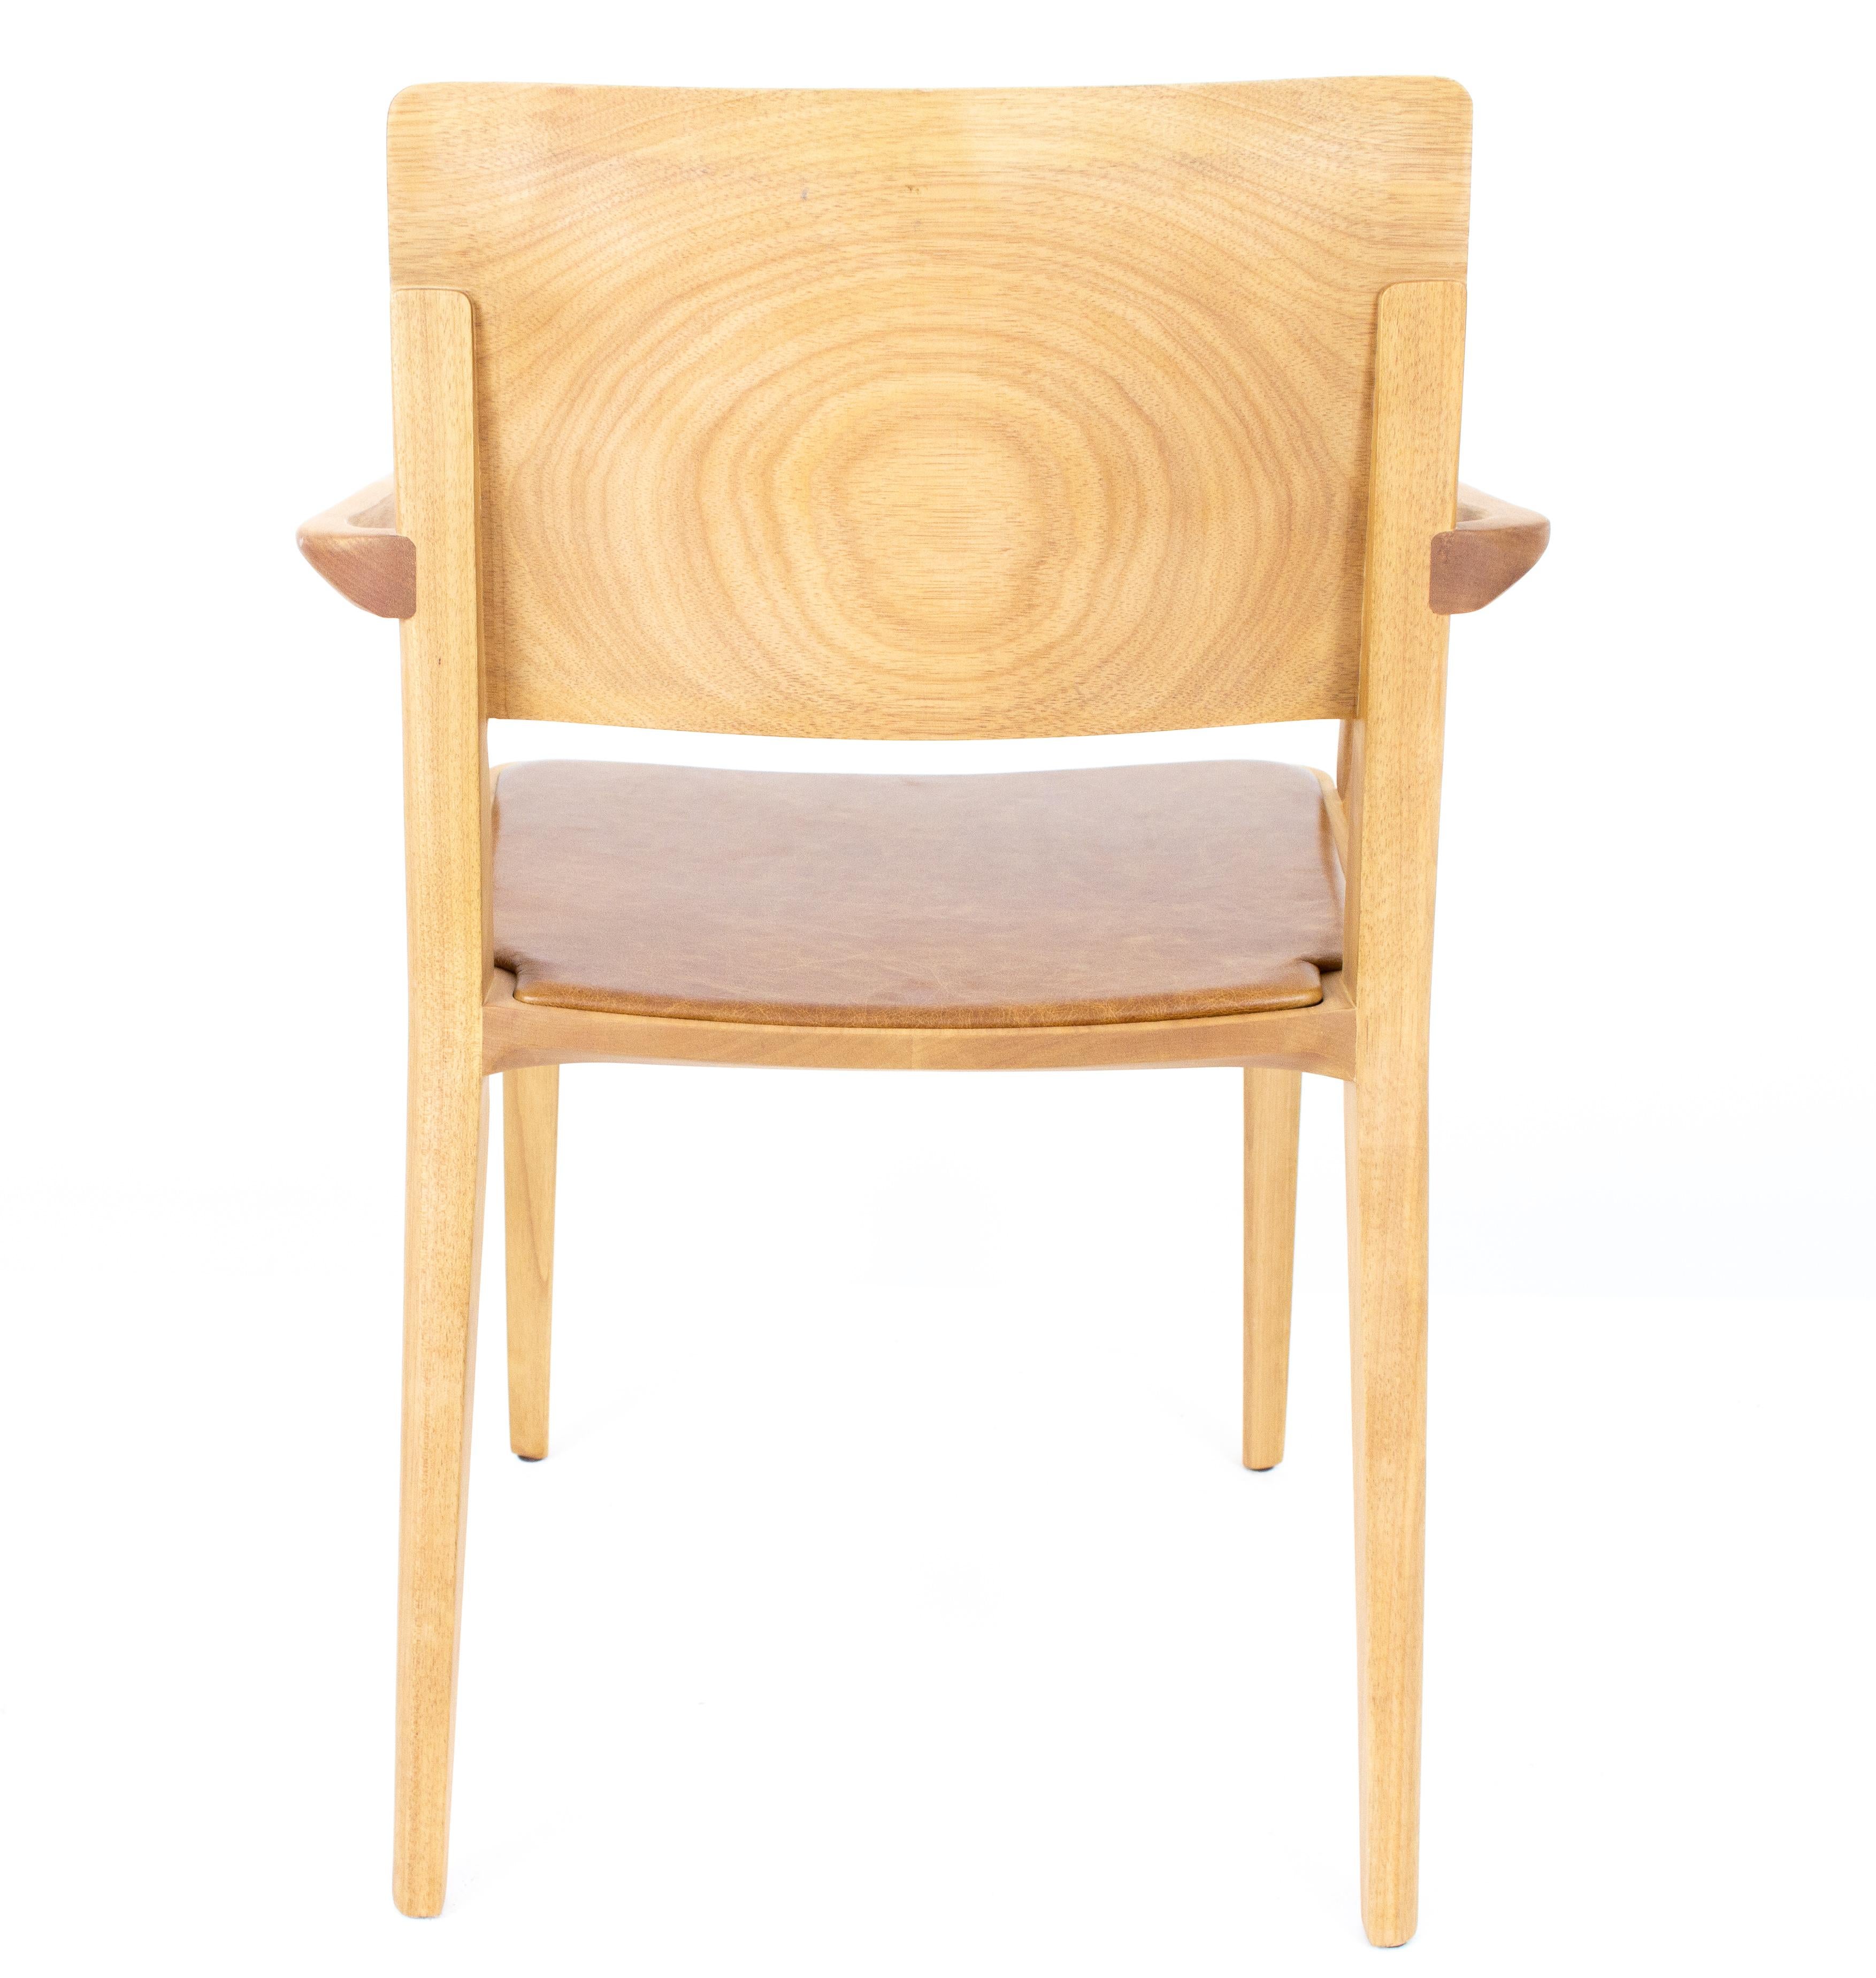 Collection de chaises Evo.

Notre collection EVO est basée sur la fusion harmonieuse entre les formes géométriques et l'interprétation moderne des archétypes du bois. 

Tous les éléments qui composent la chaise sont conçus avec précision pour